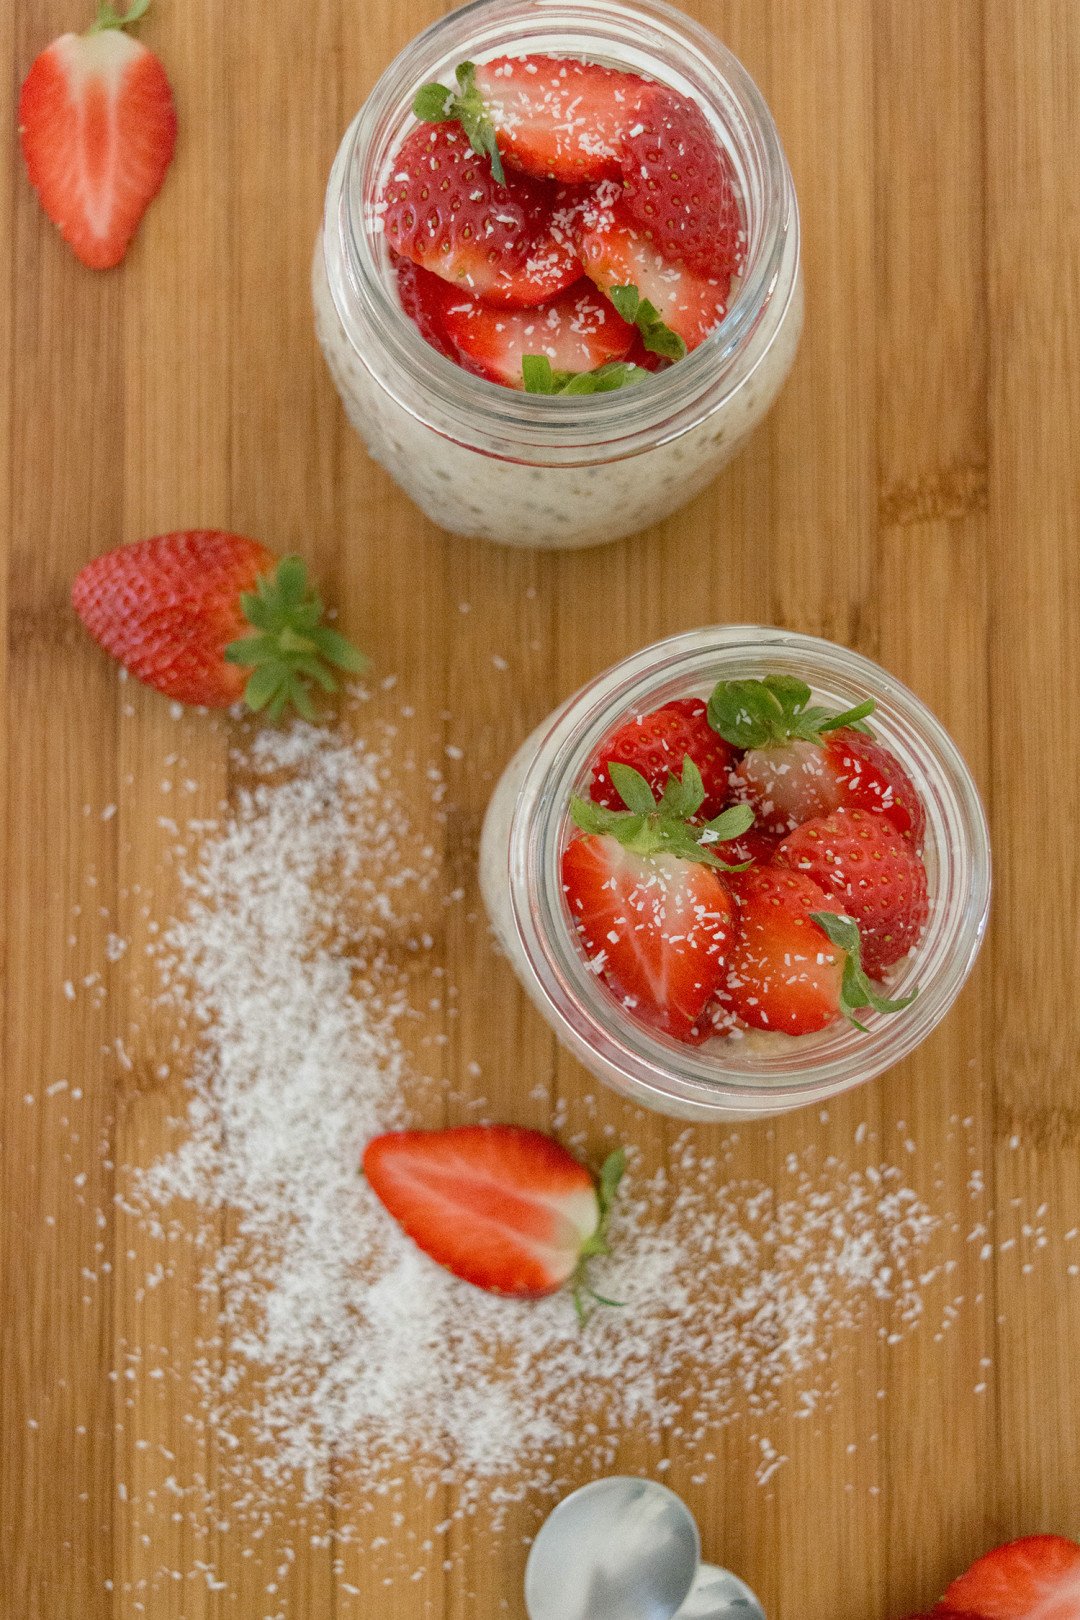 Coconut Porridge with Strawberries